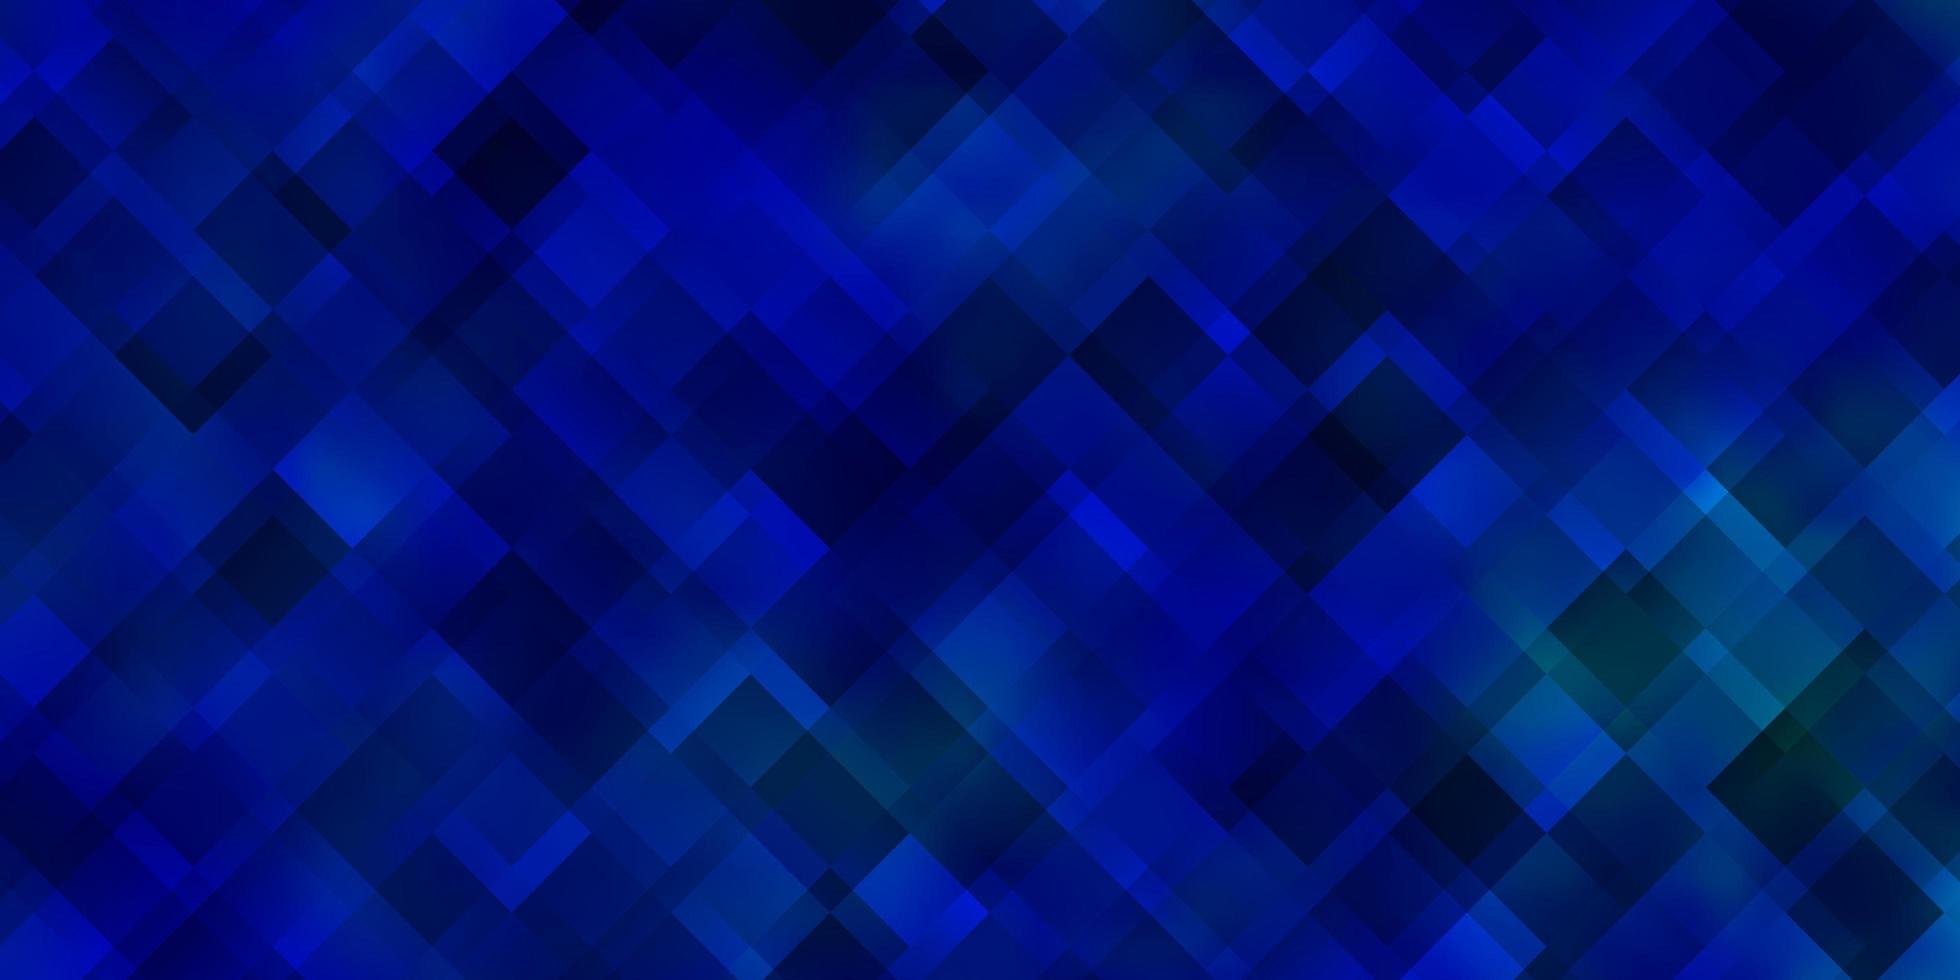 textura de vector azul claro en estilo rectangular